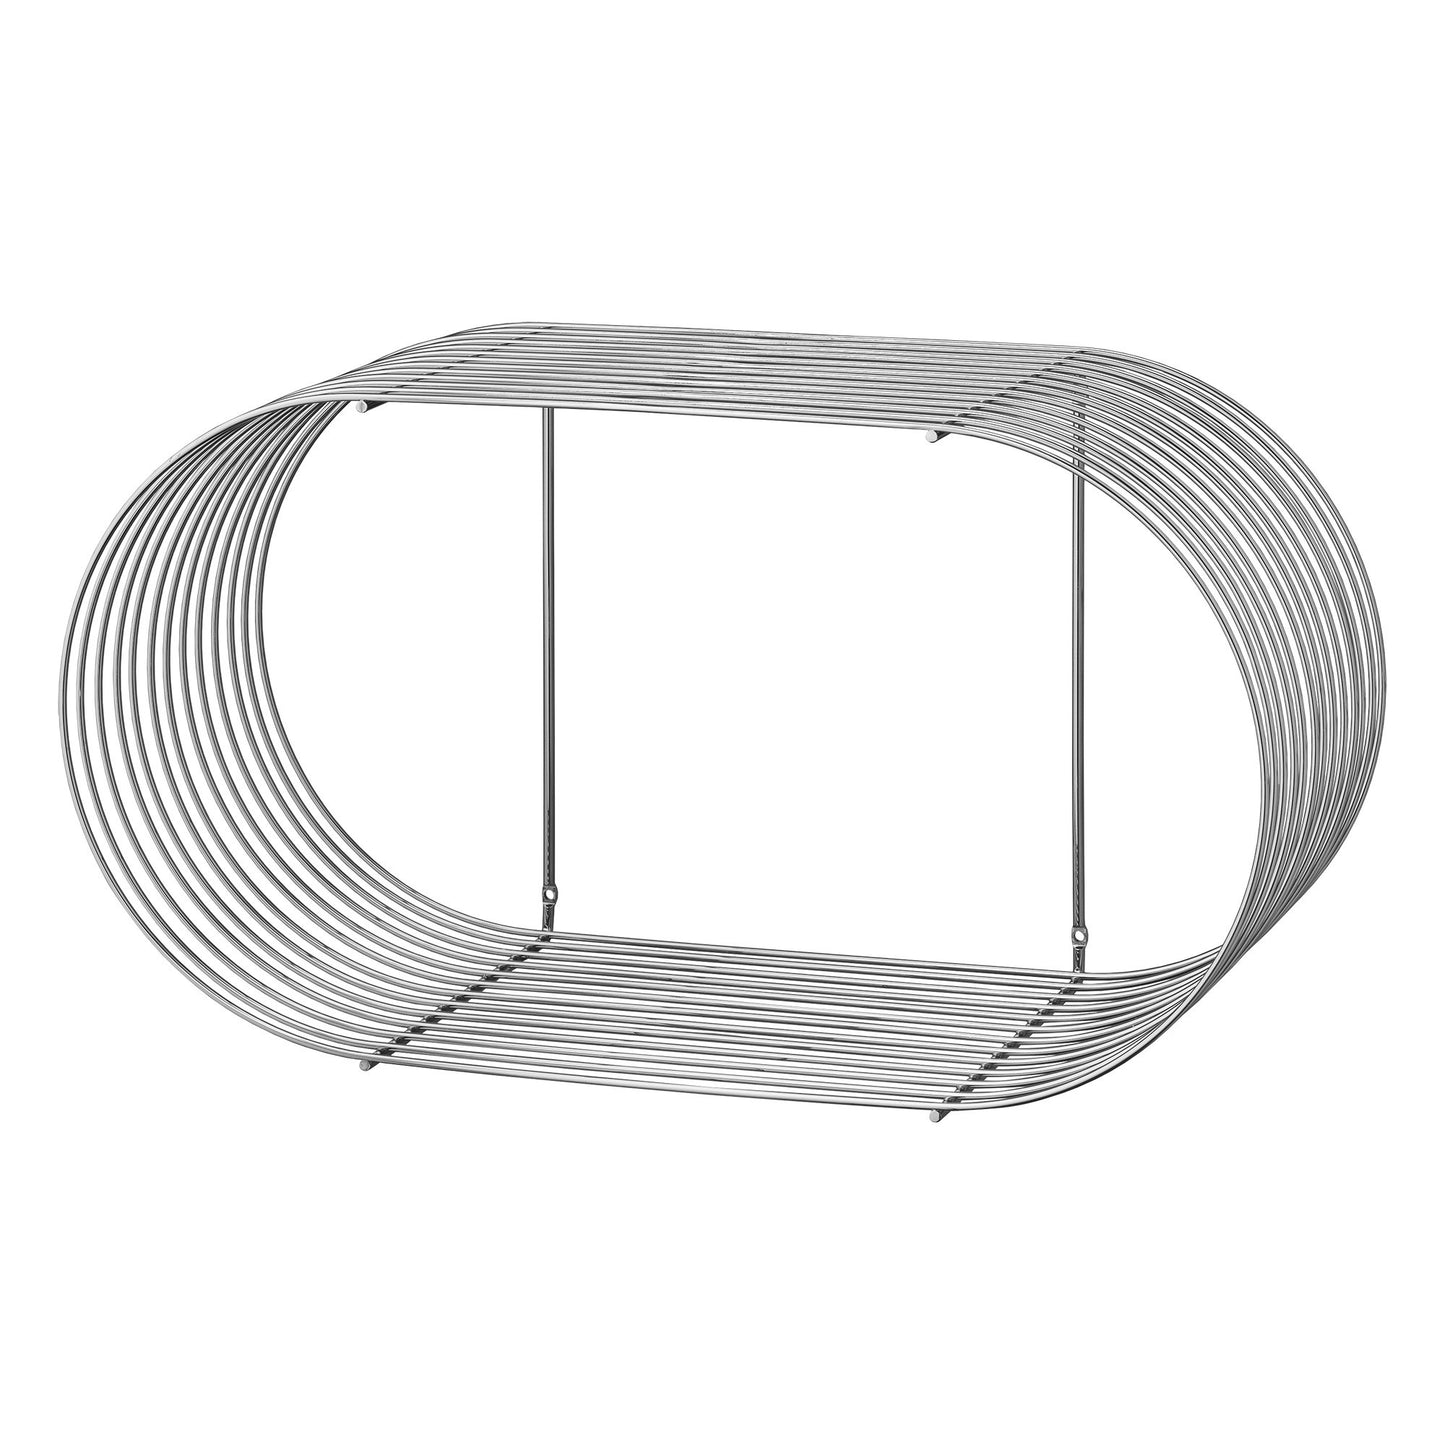 CURVA Shelf H33 cm by AYTM #Silver